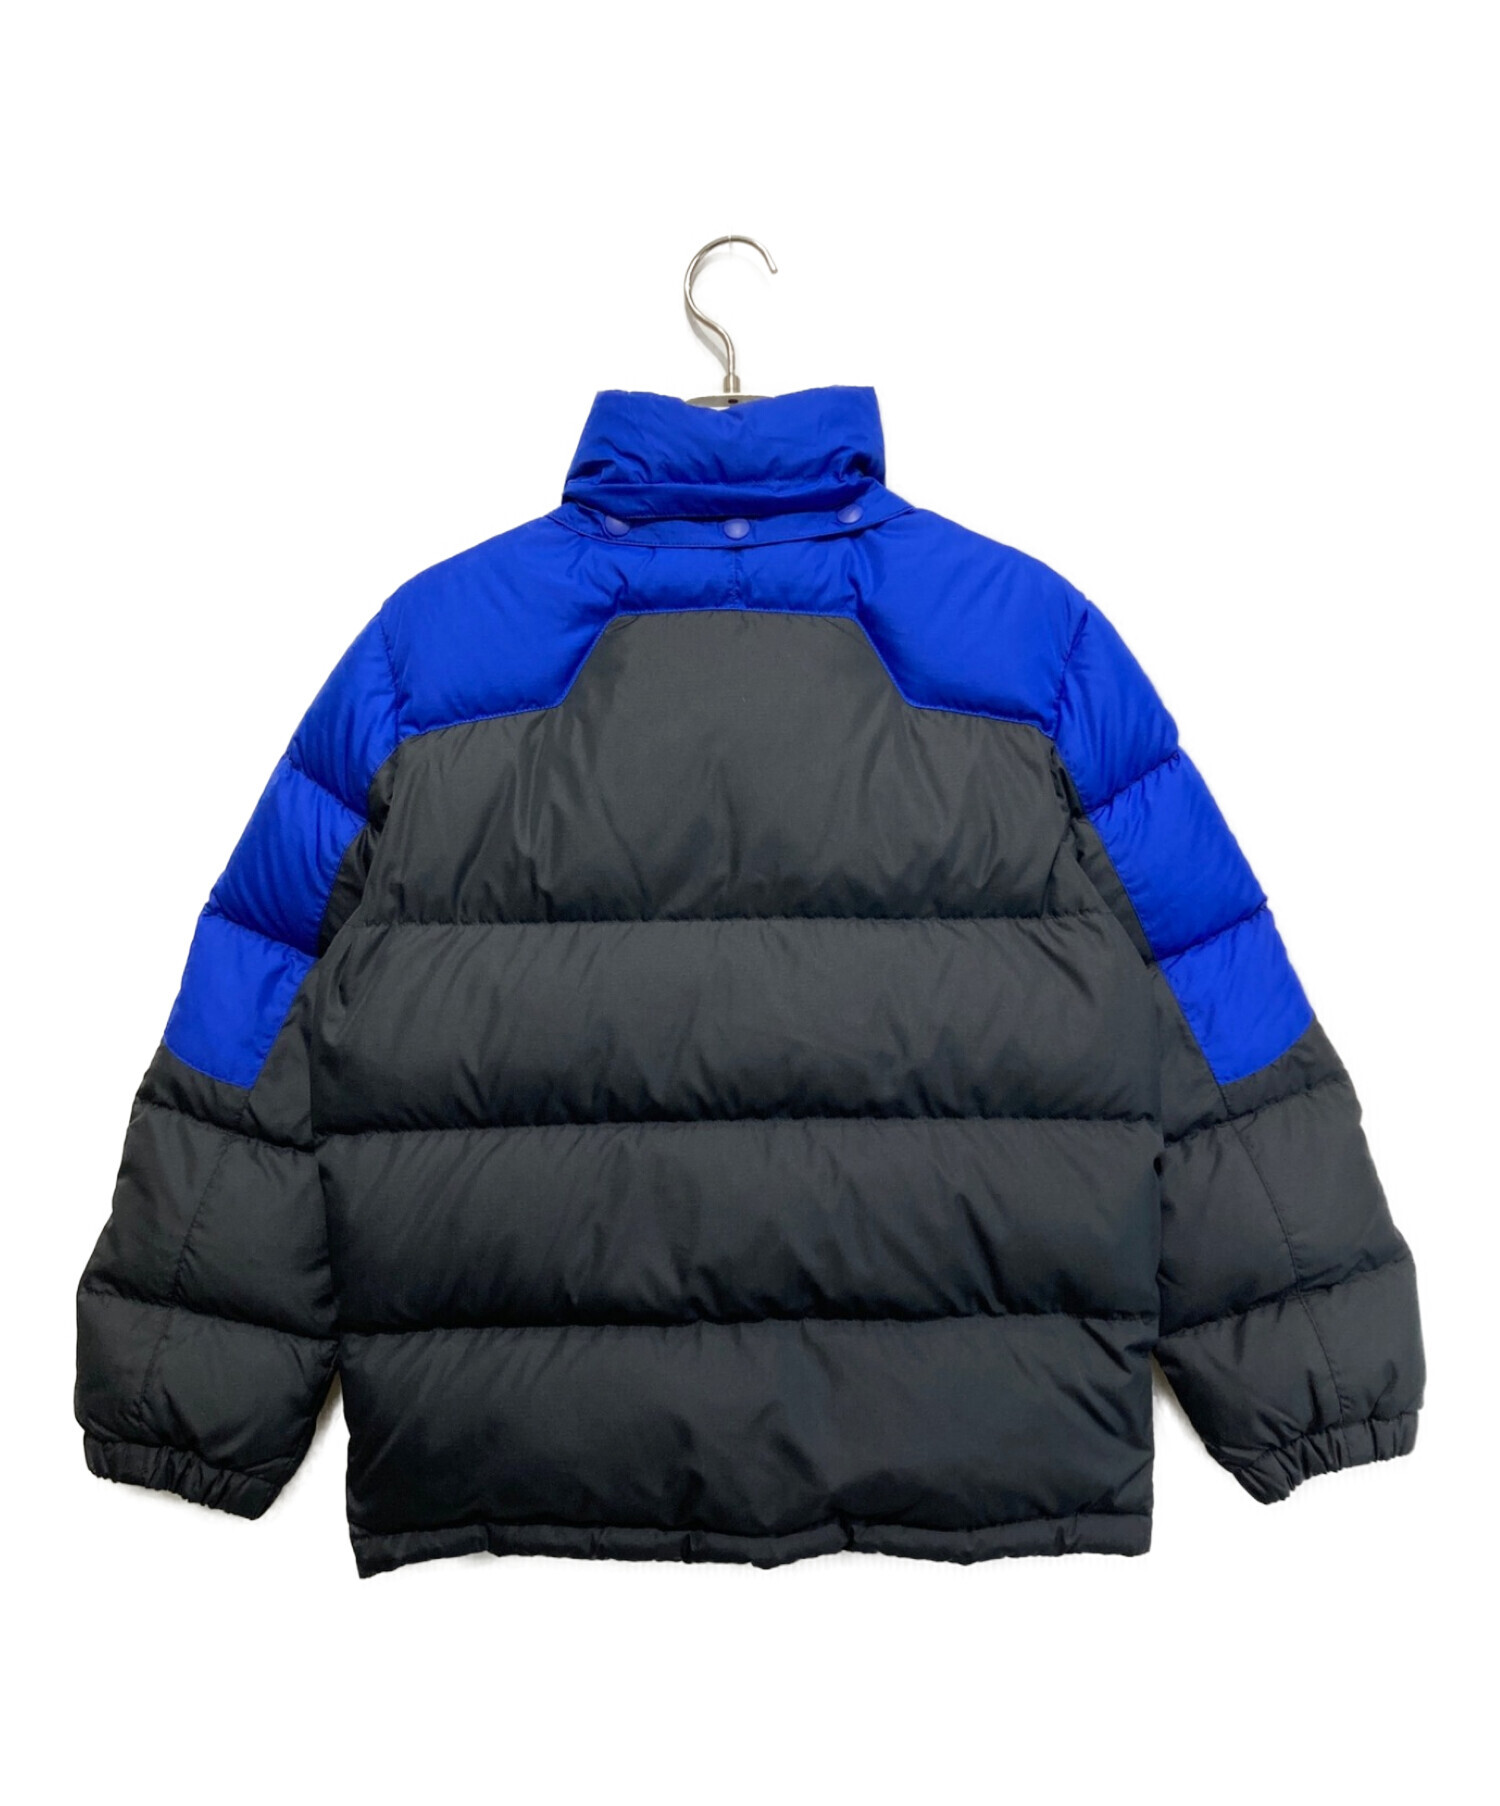 POLO RALPH LAUREN (ポロ・ラルフローレン) ダウンジャケット ブルー×ブラック サイズ:SIZE 150cm